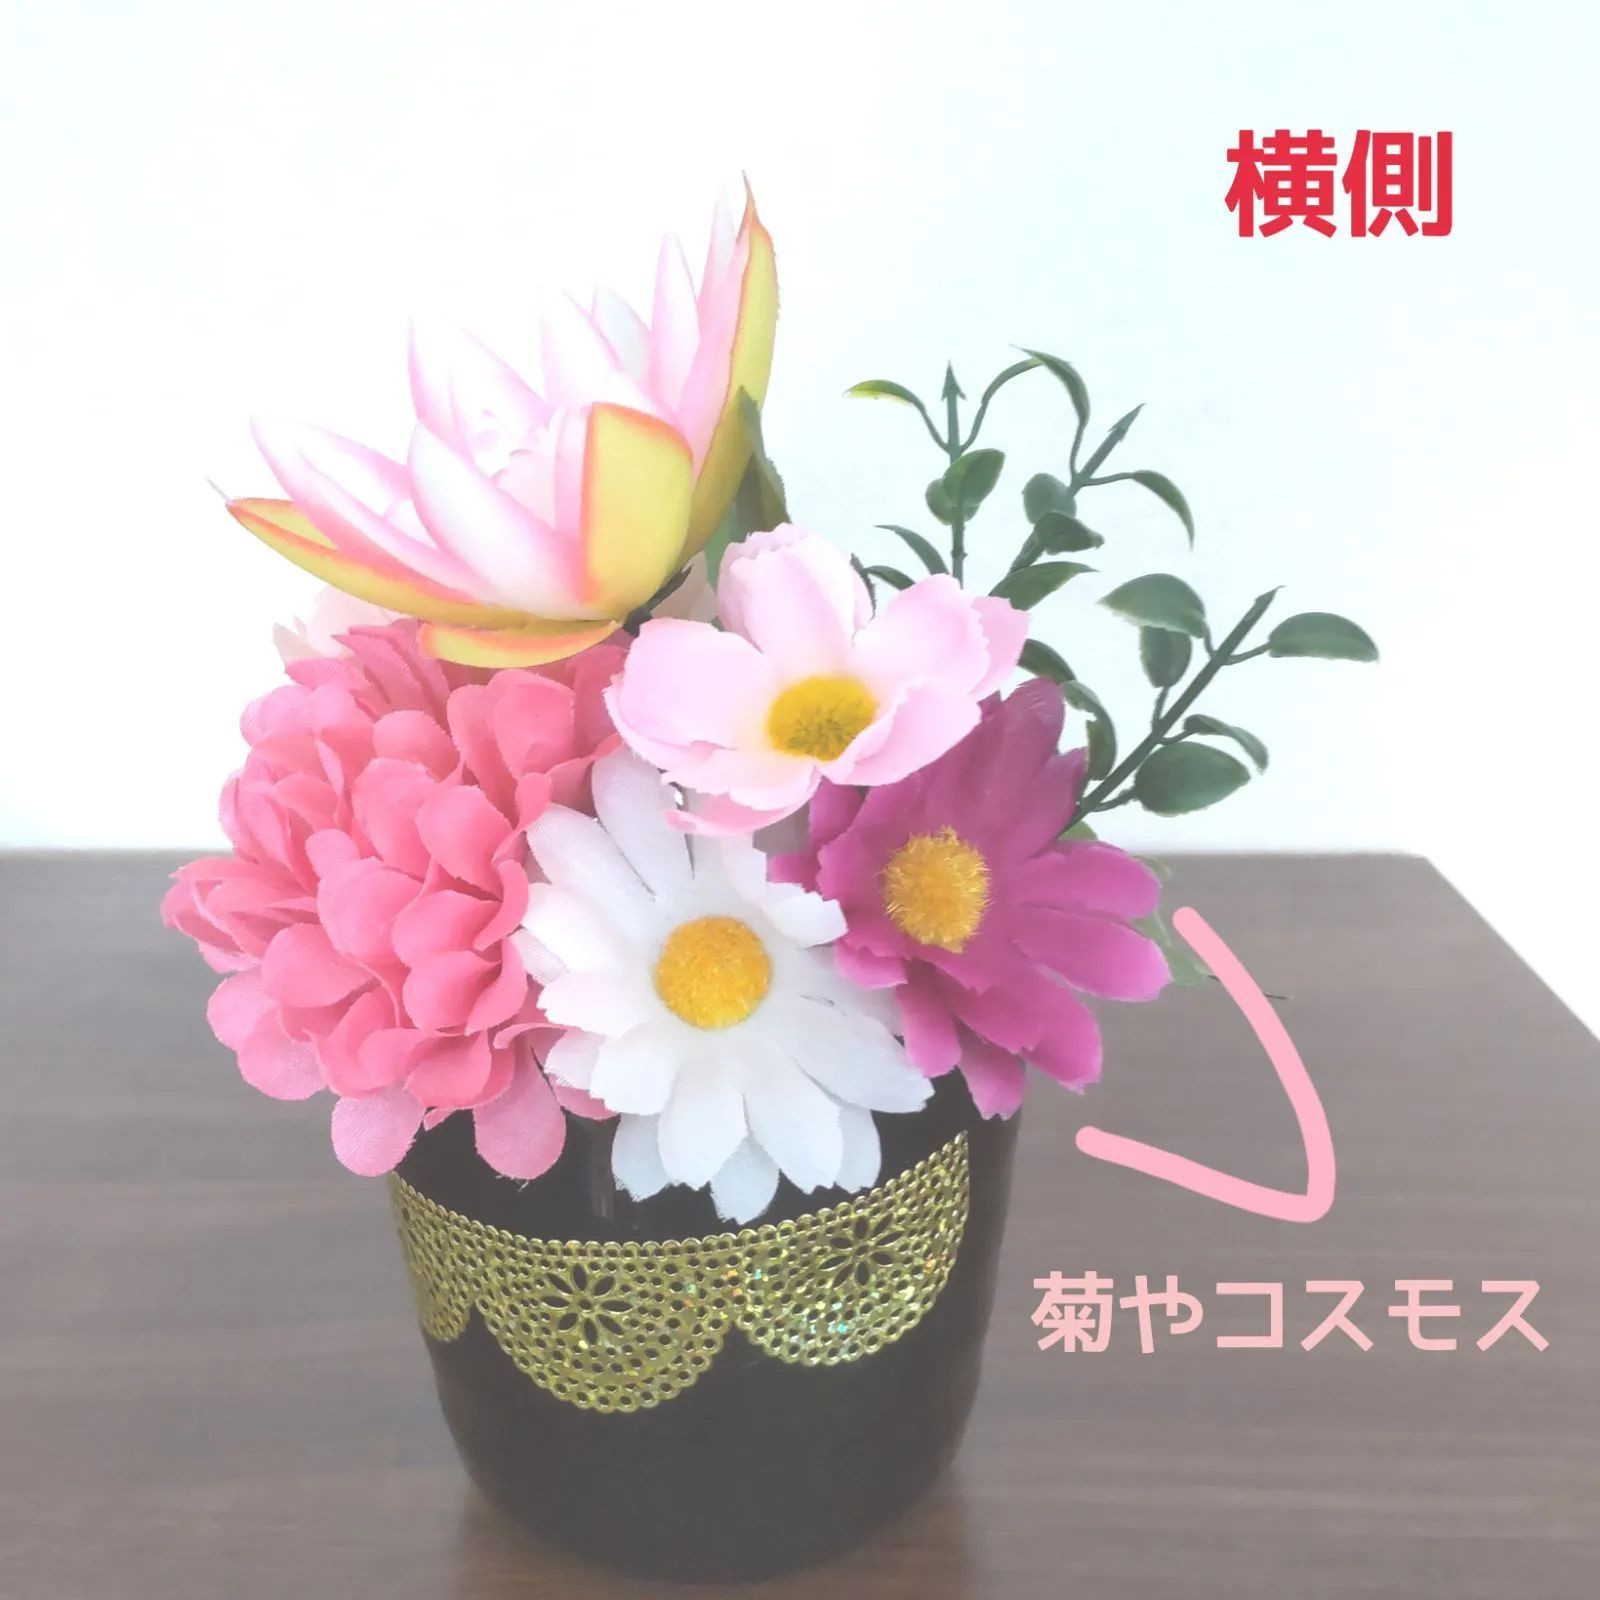 リピート販売です♬人気の ❰ 蓮と菊 ❱ ♡ ボリューミーな２個セット 